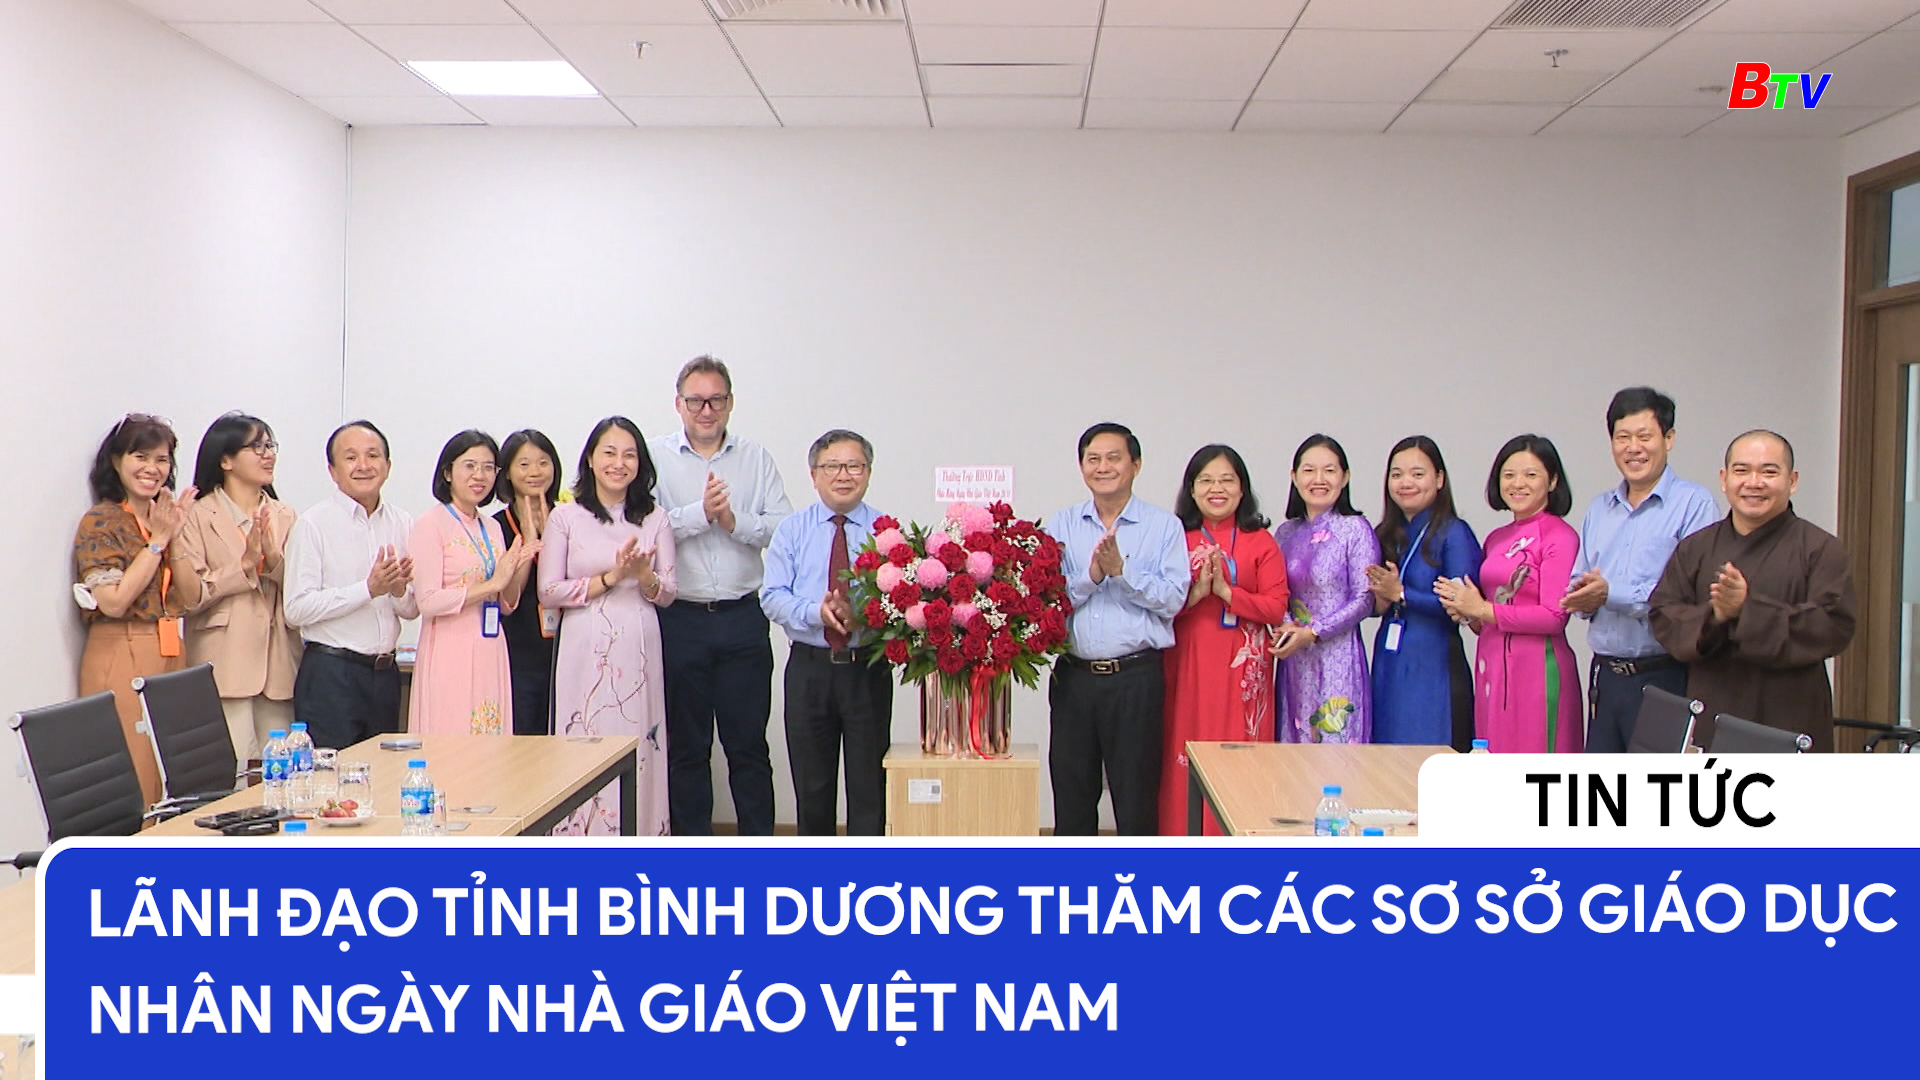 Lãnh đạo tỉnh Bình Dương thăm các sơ sở giáo dục nhân ngày nhà giáo Việt Nam 20.11	